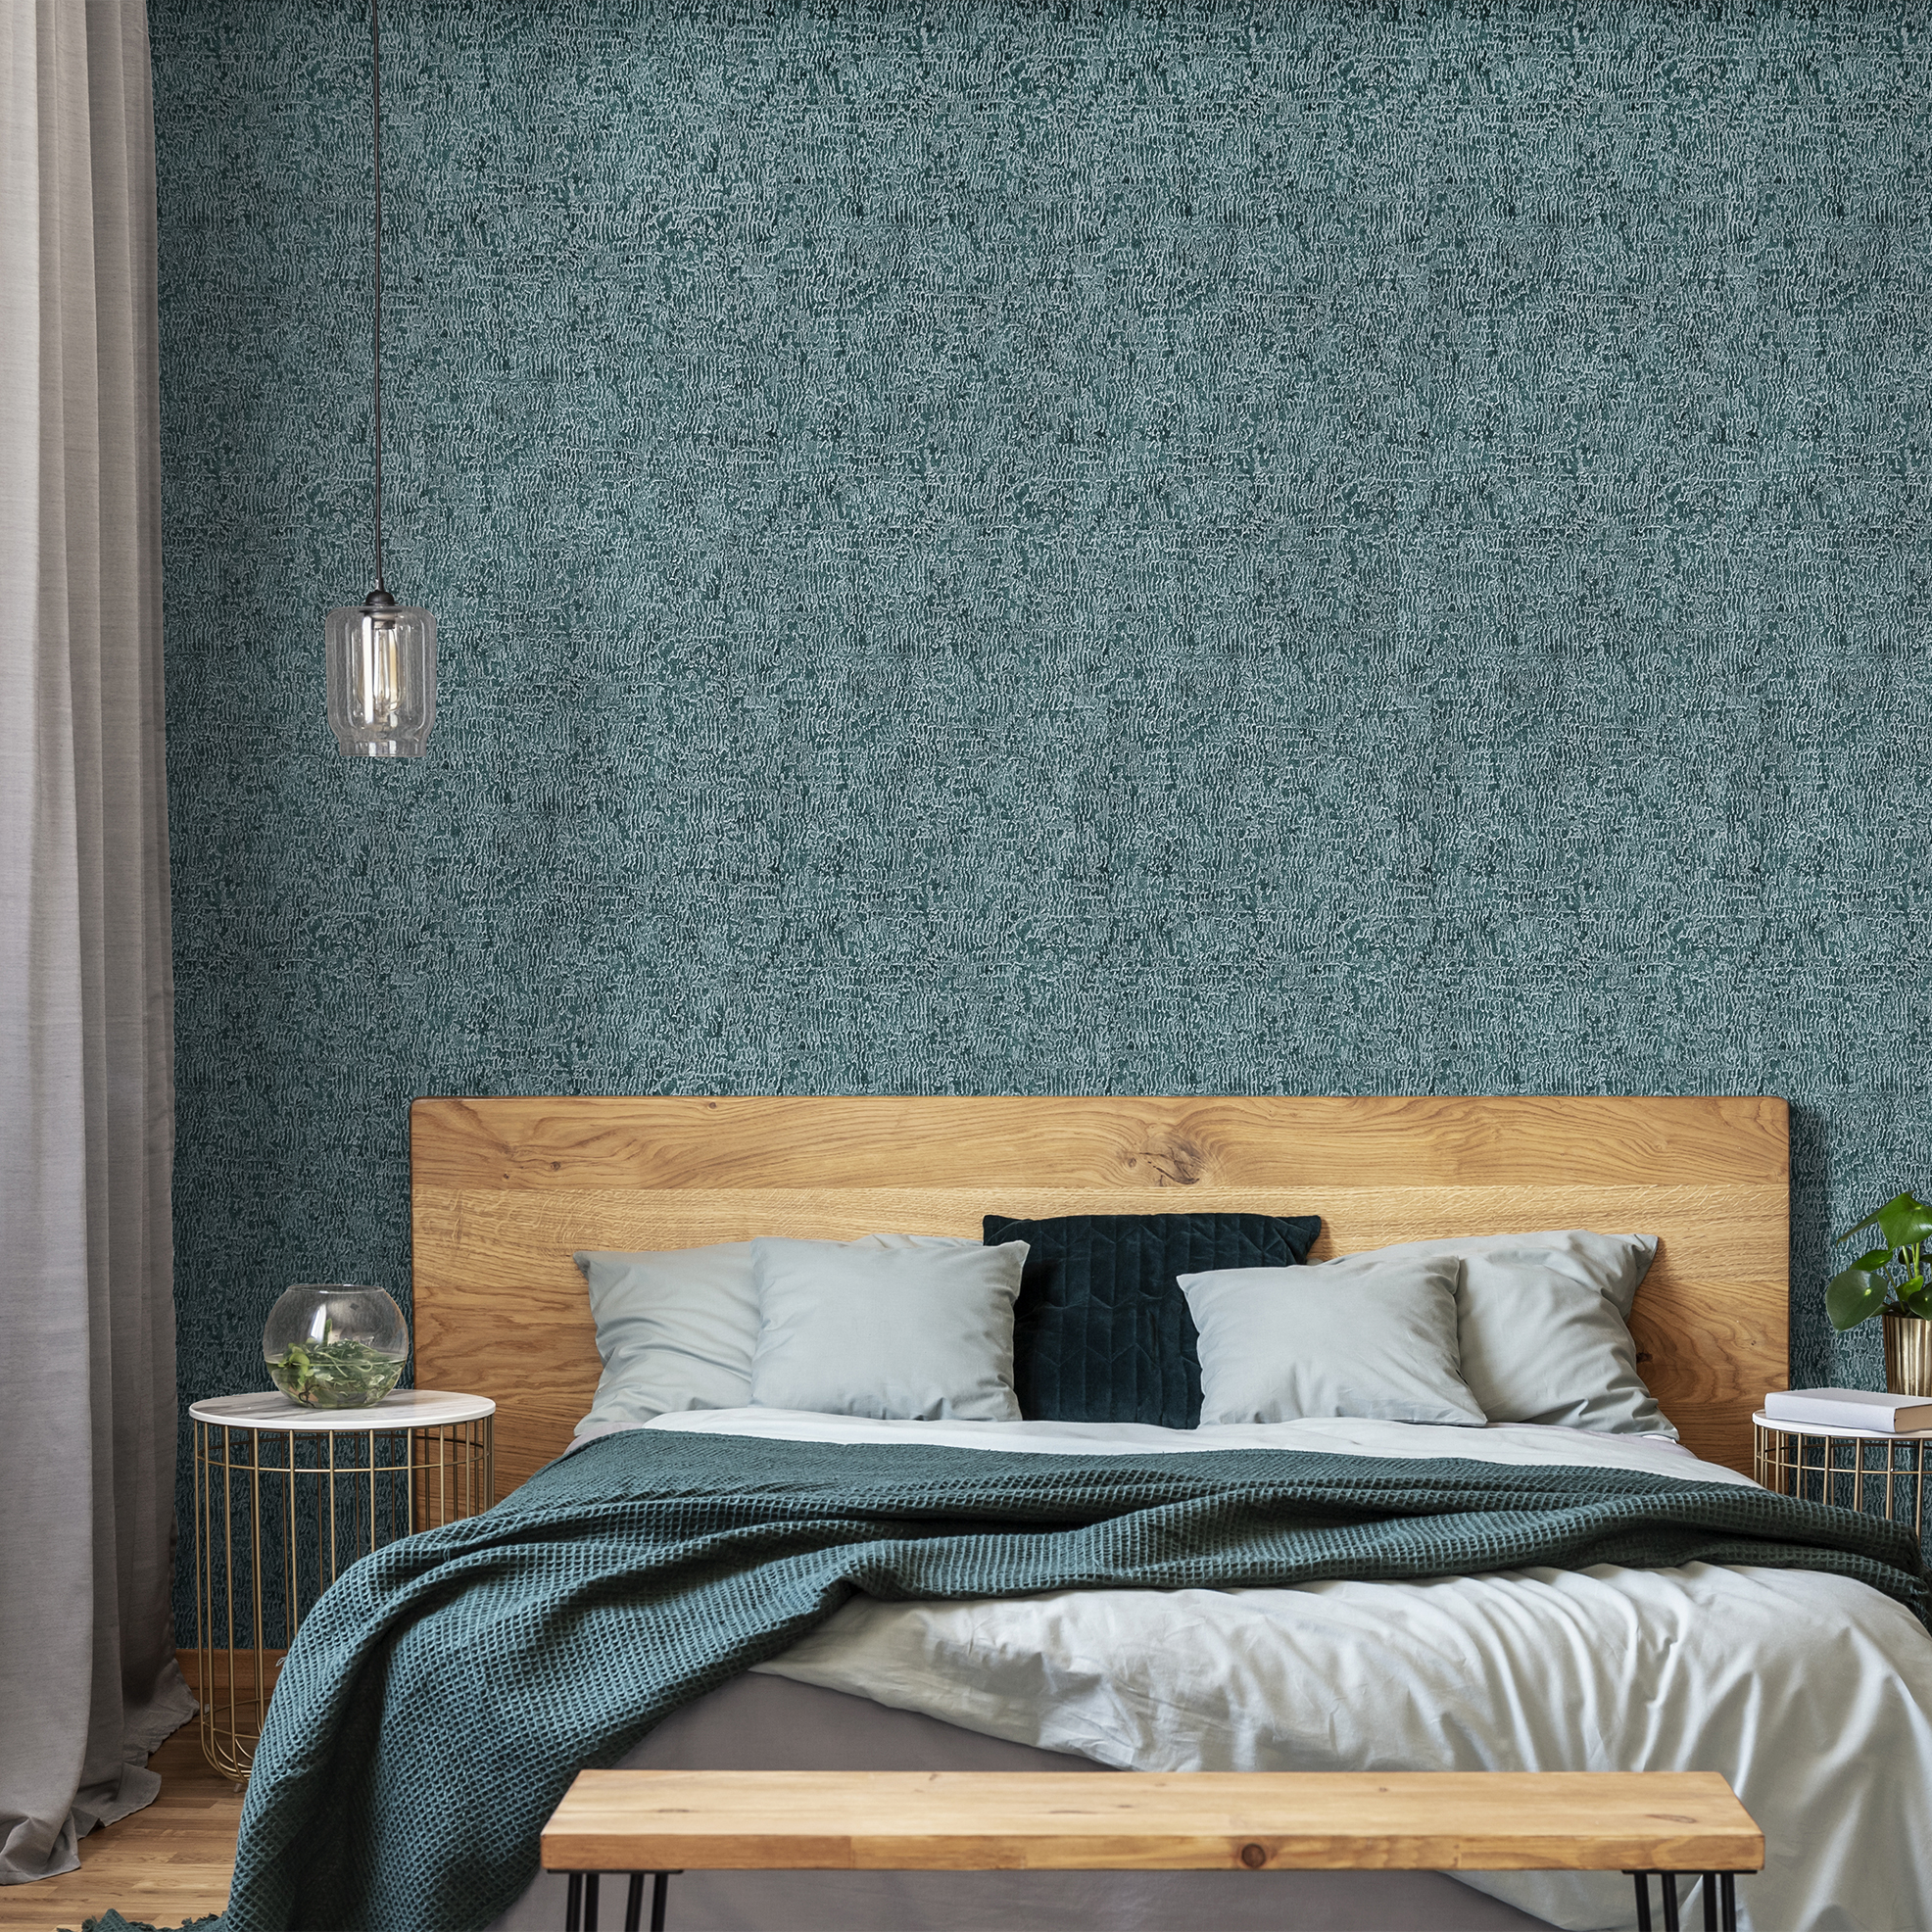 Ideal für alle Schlafräume erzeugt diese Tapete aus dem Hause Hohenberger, für ein gesundes Wohngefühl durch den Verzicht auf PVC und durch ökologische Produktion